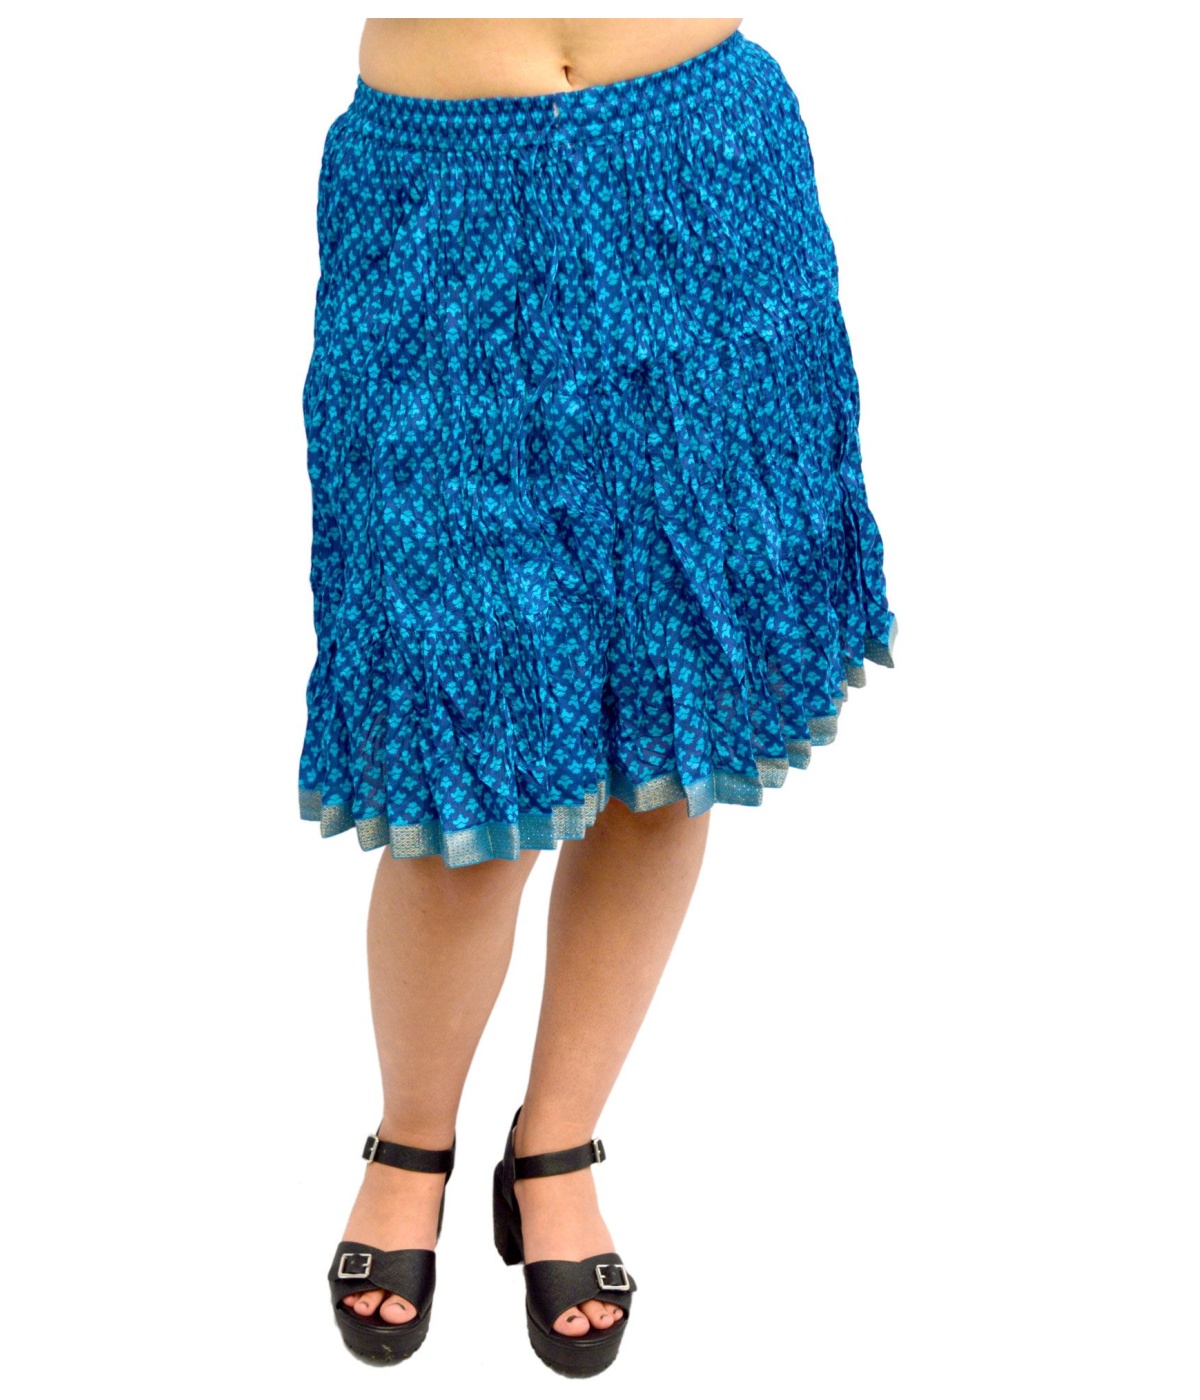  Blue Cotton Short Indian Skirt